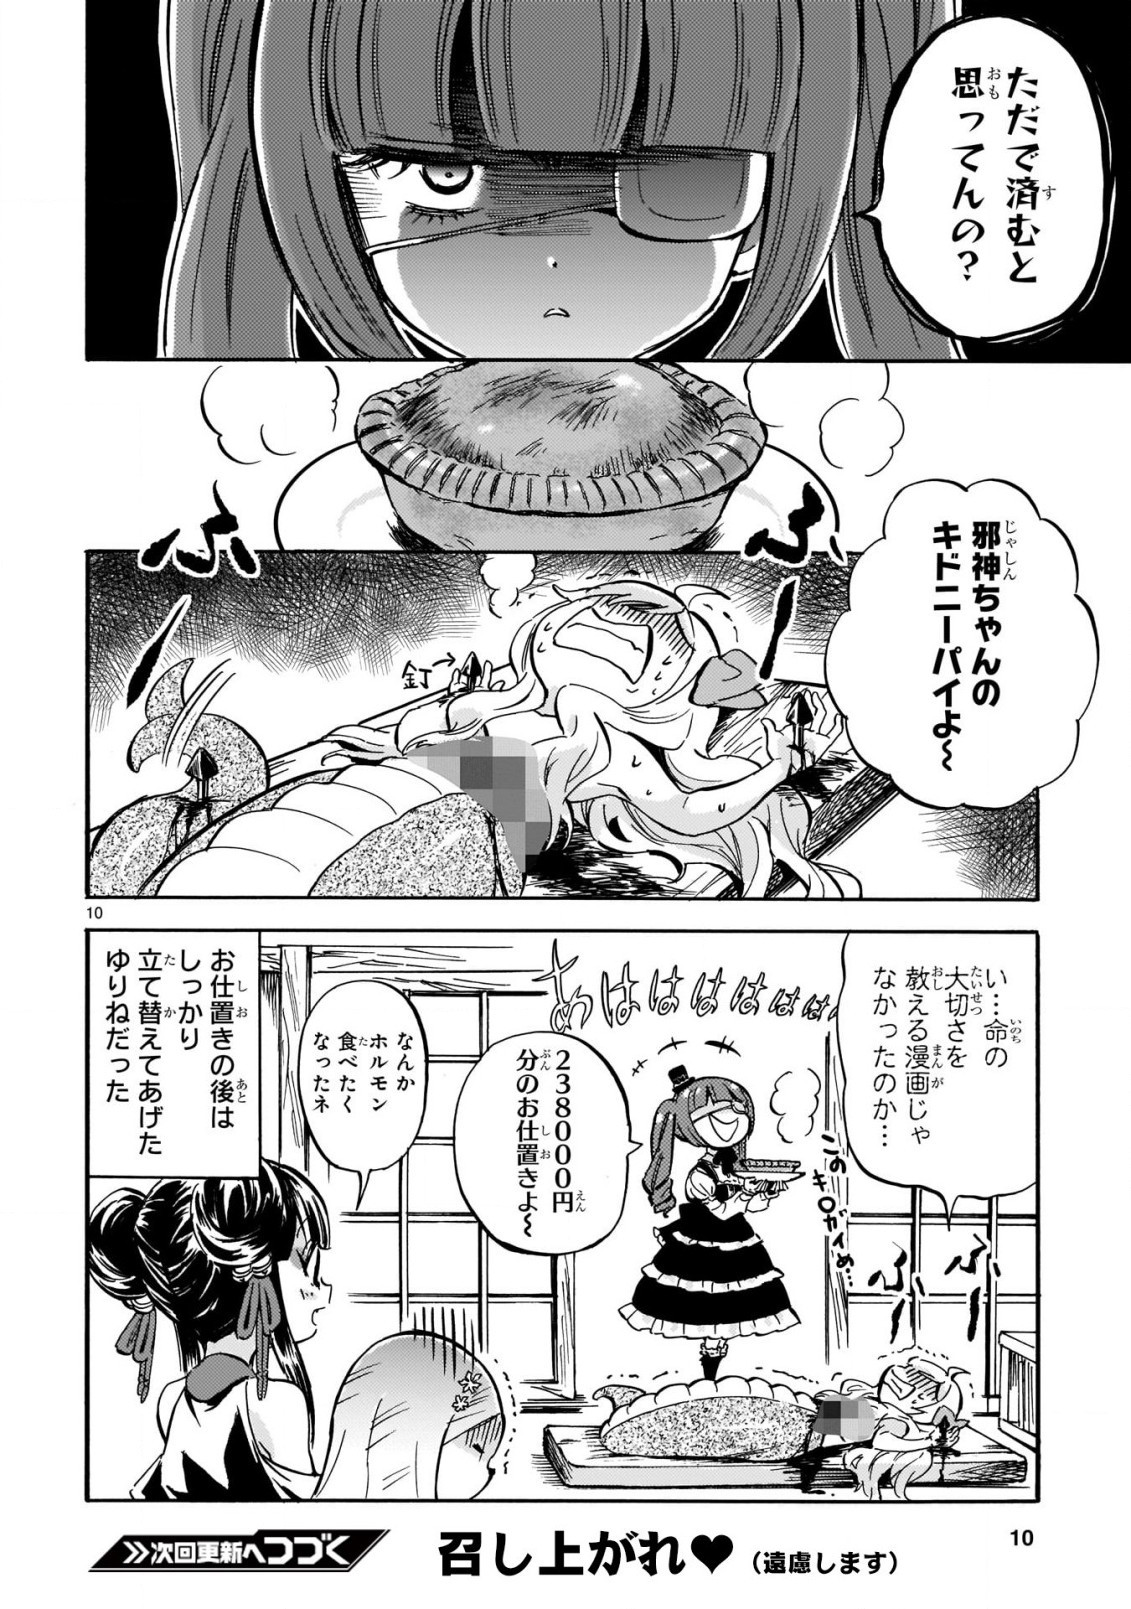 Jashin-chan Dropkick - Chapter 204 - Page 11